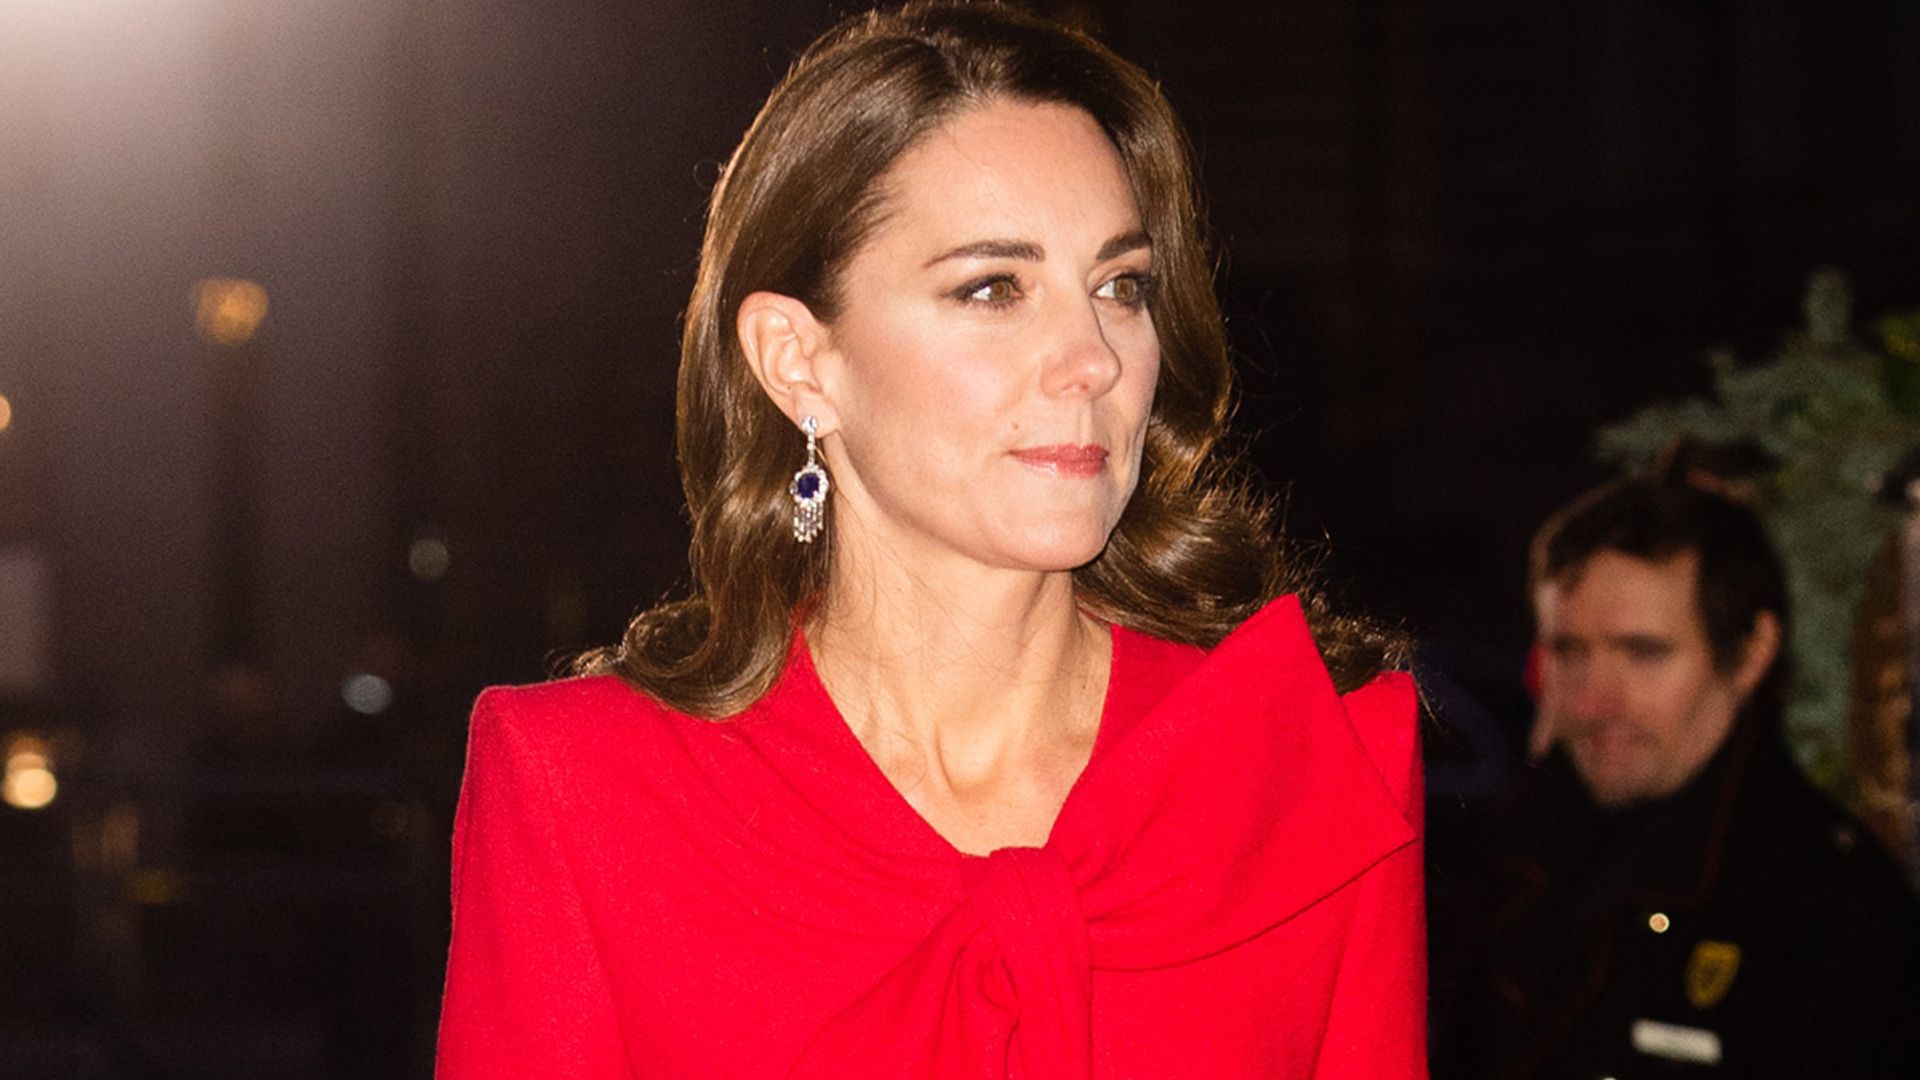 Tom Walker reveals Kate Middleton's nerves during carol service rehearsals